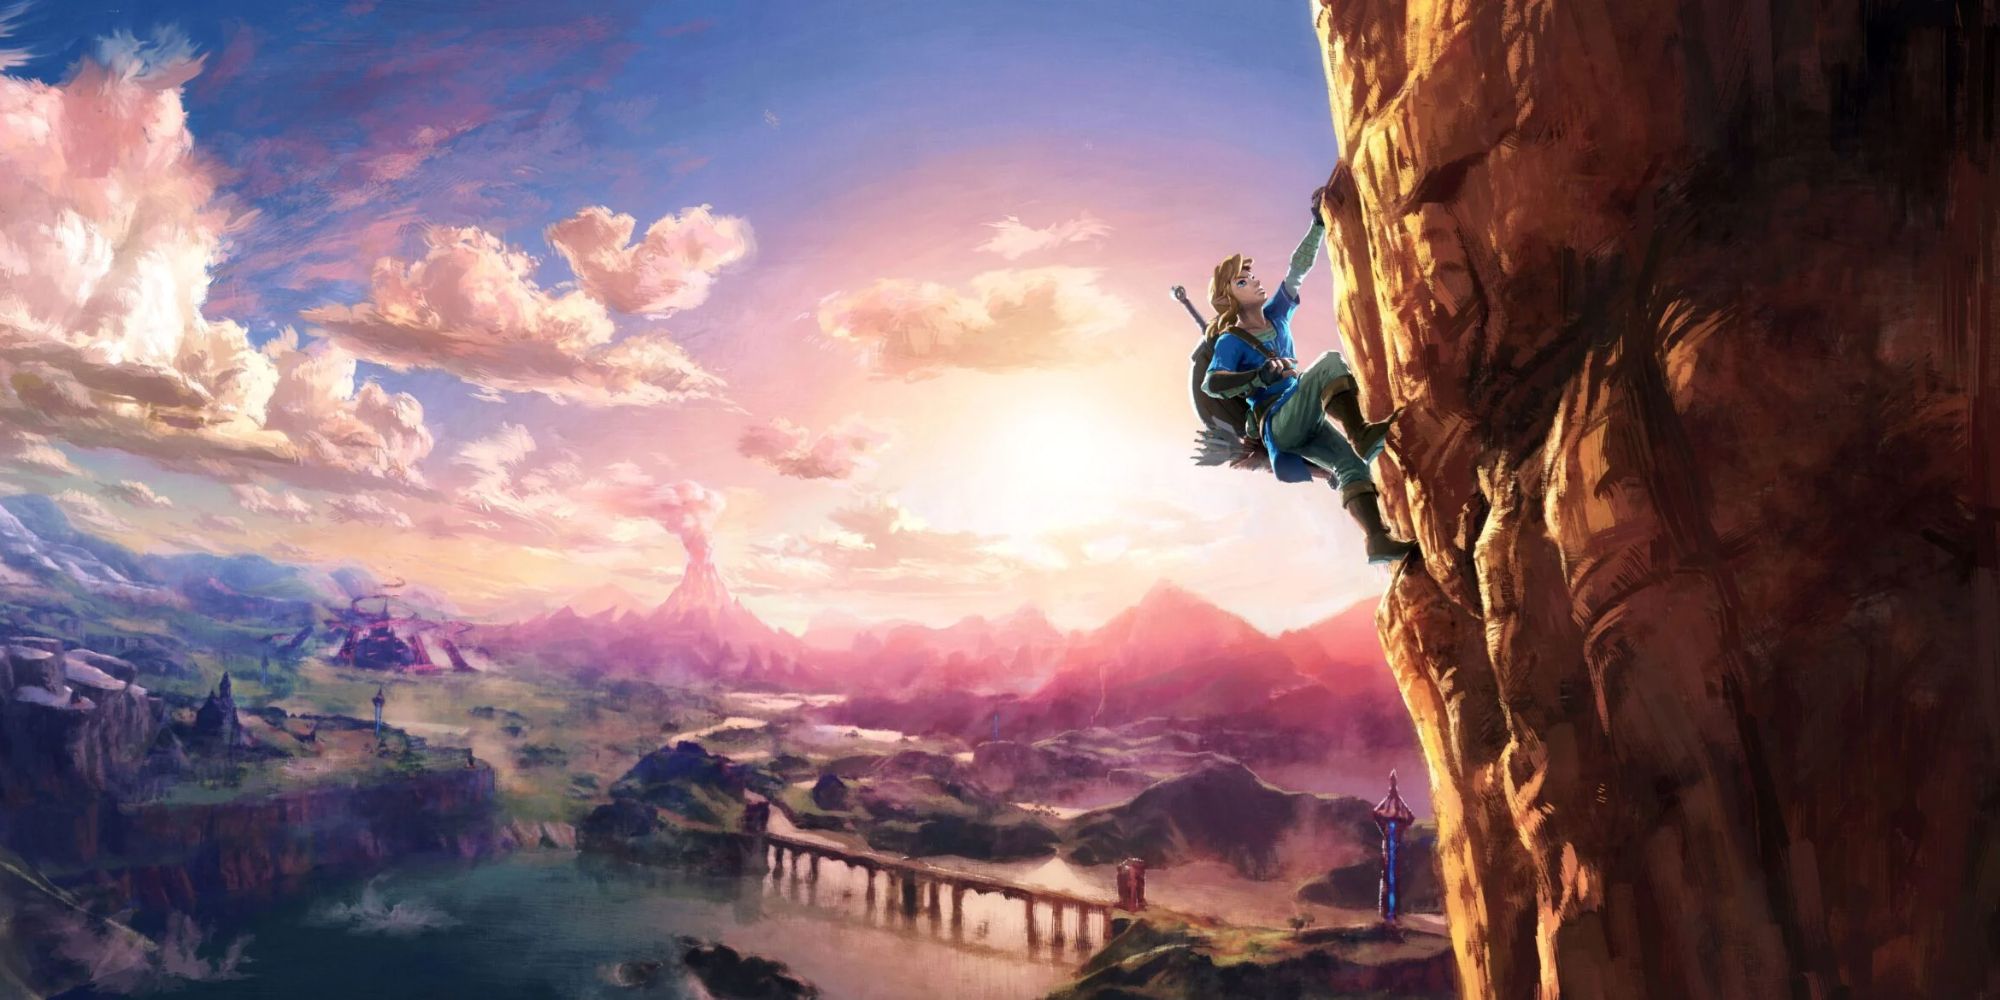 Link escalando uma montanha em uma ilustração BOTW